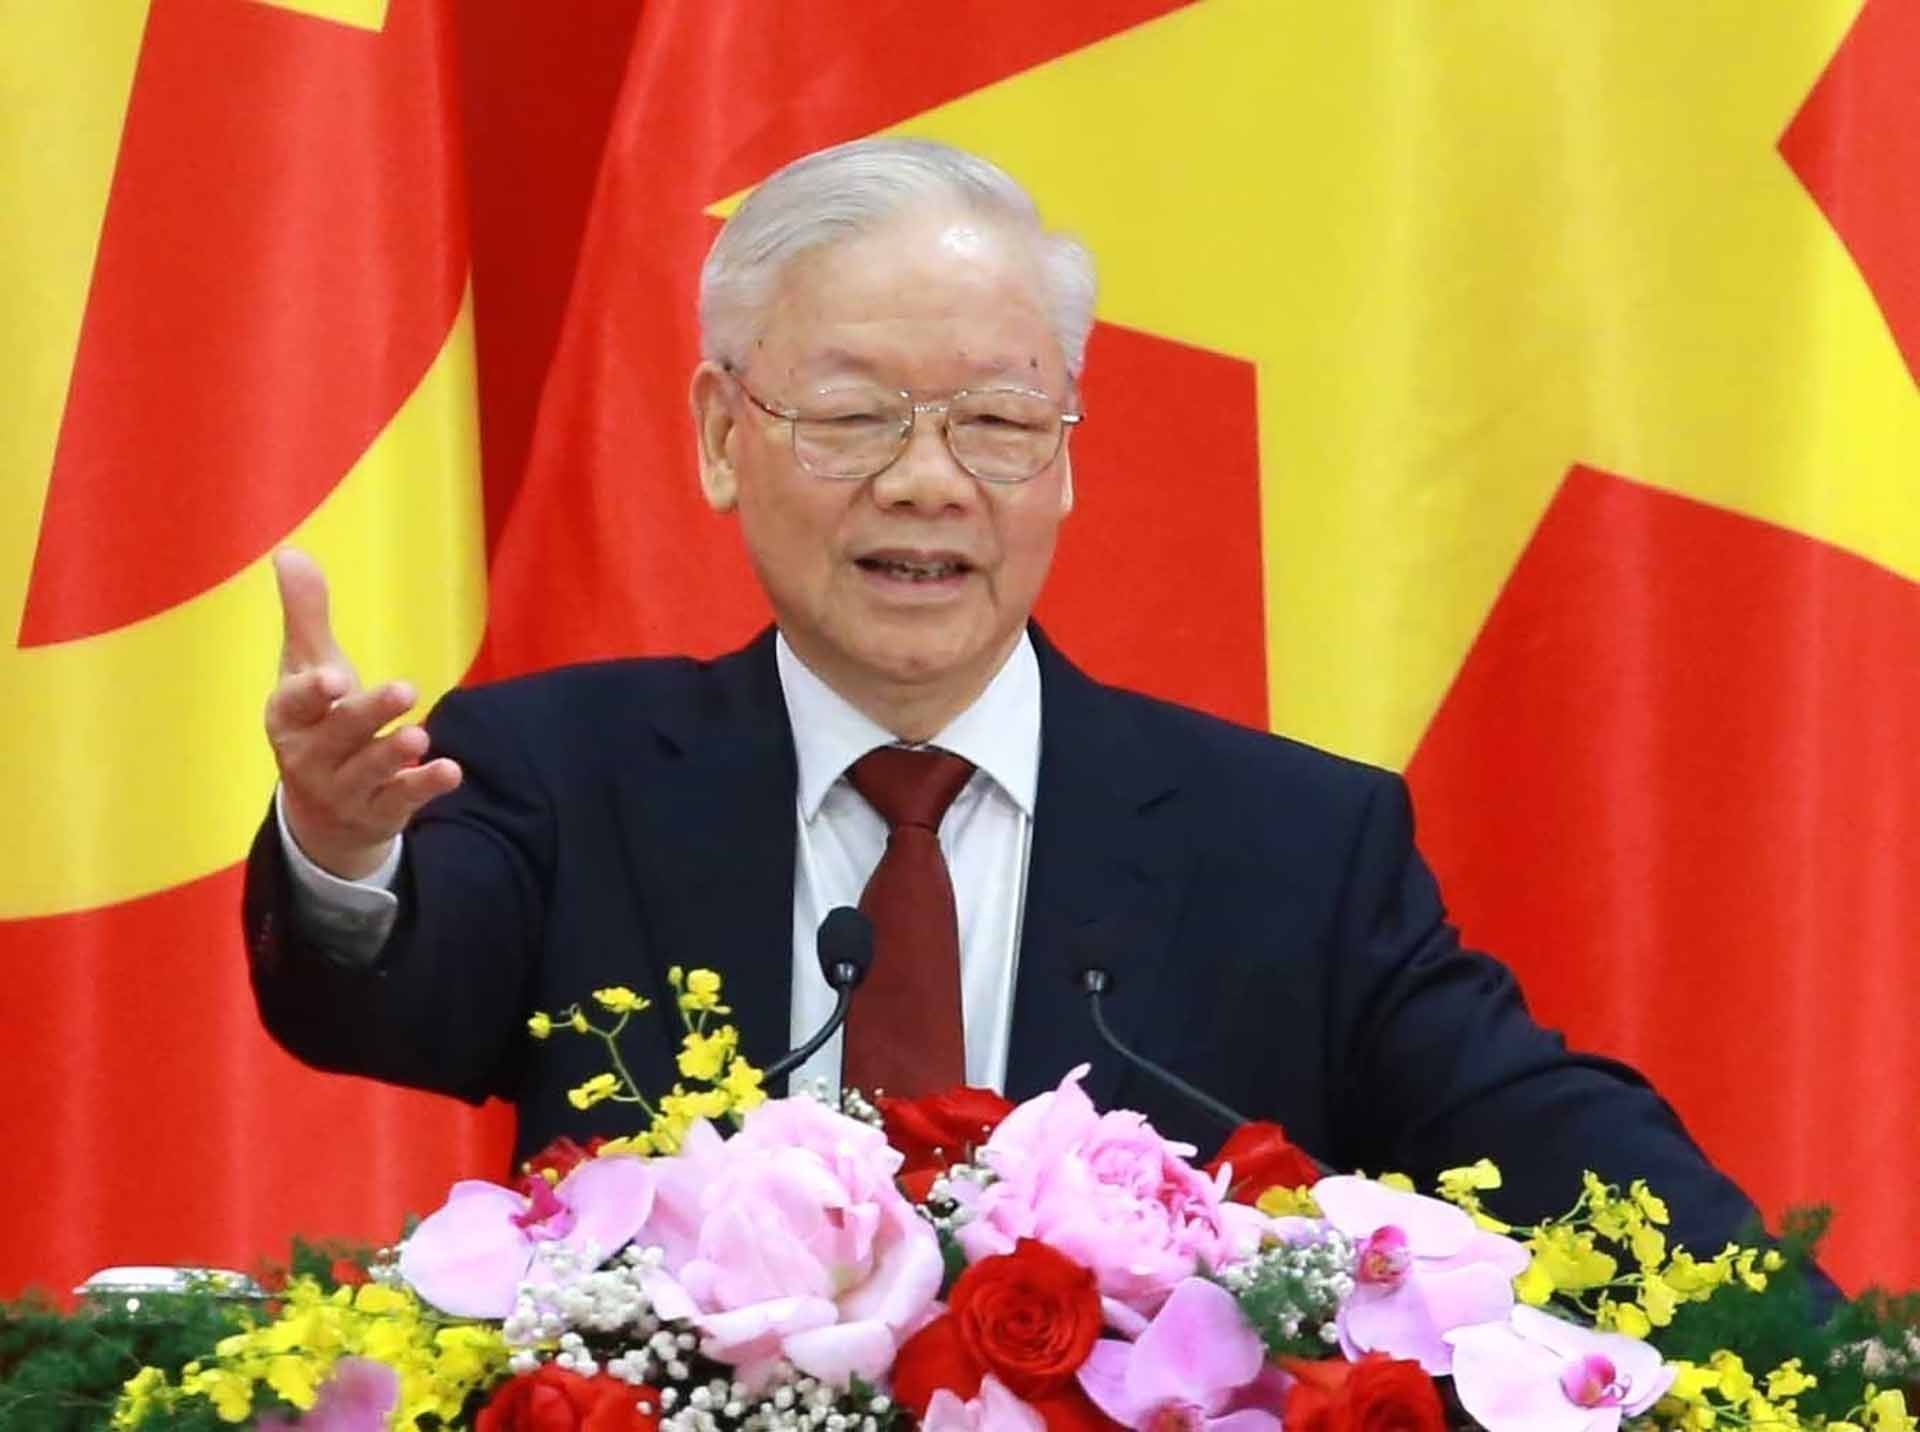 Trao Huân chương Sao Vàng tặng Tổng Bí thư Nguyễn Phú Trọng